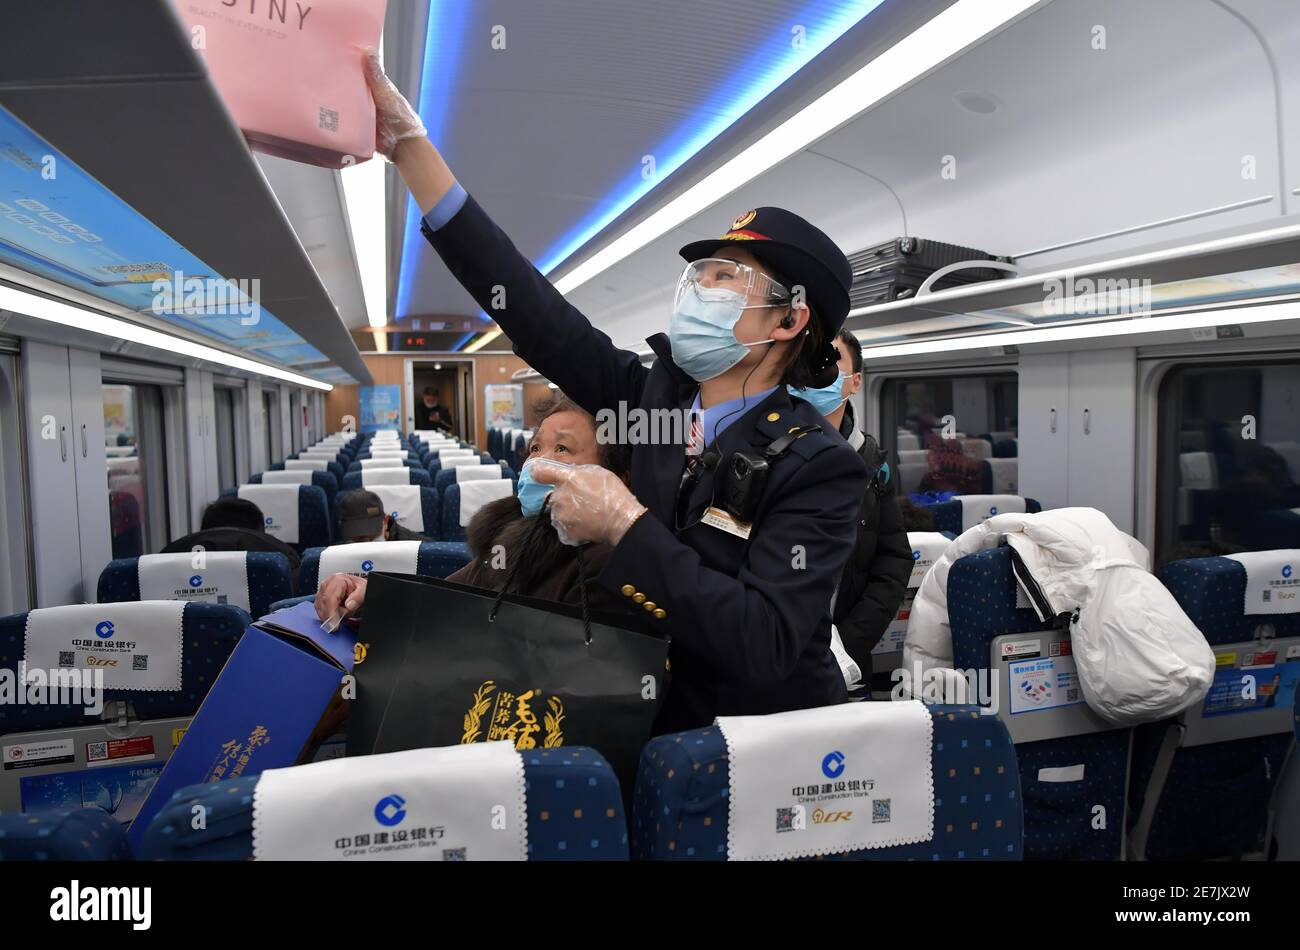 (210130) -- NANCHANG, 30 gennaio 2021 (Xinhua) -- Wang Ajing, un assistente del China Railway Nanchang Bureau Group Co., Ltd., aiuta un passeggero a mettere i suoi bagagli a bordo di un treno il 26 gennaio 2021. Wang Ajing, di 30 anni, che proviene dalla città di Xianyang, nella provincia di Shaanxi, nella Cina nord-occidentale, sta ora fungendo da assistente del China Railway Nanchang Bureau Group Co., Ltd. Prima di lasciare la sua città natale nel 2008, i genitori di Wang le hanno dato una foto di famiglia, che ha portato con lei da allora. La madre di Wang, per qualche ragione, non era in grado di partecipare al suo matrimonio quando si sposò a Jiangxi nel 201 Foto Stock